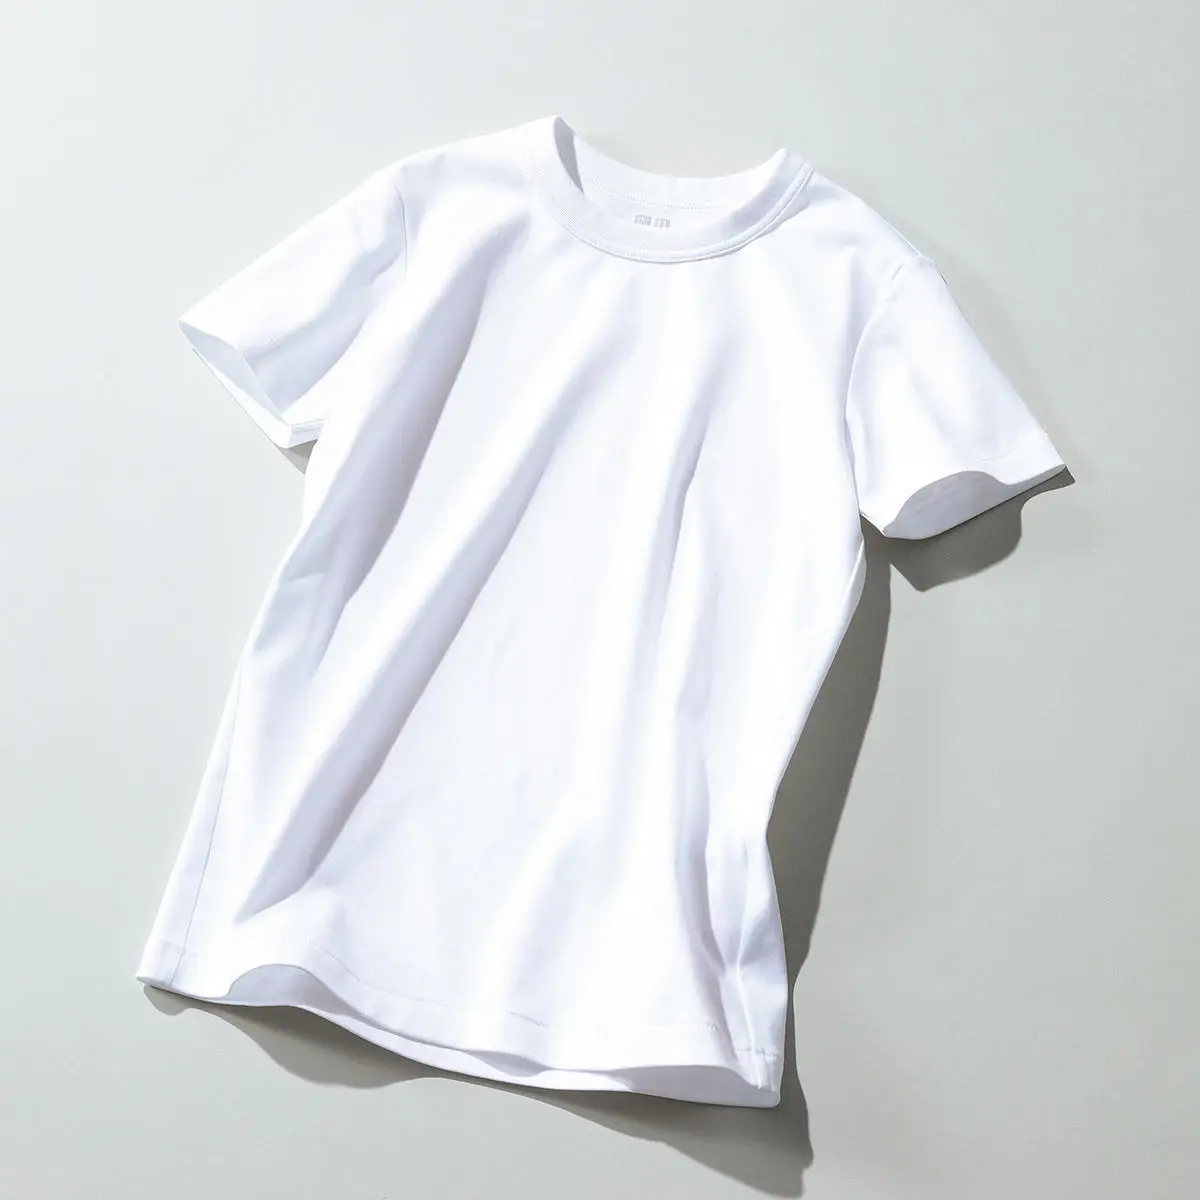 『Uniqlo U（ユニクロ ユー）』の白Tシャツ